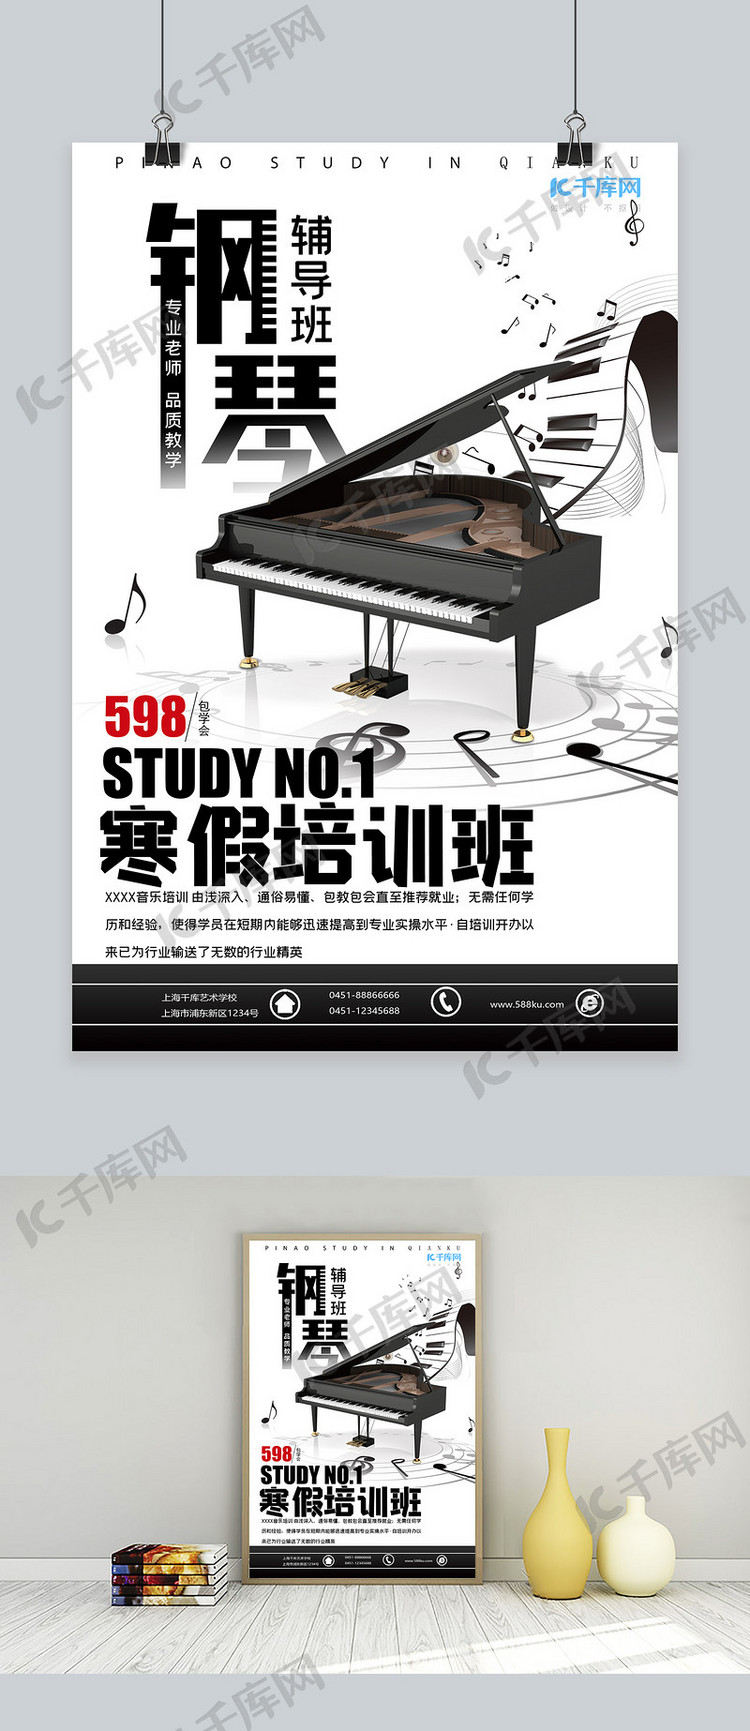 钢琴艺术培训兴趣班招生黑白色简约海报